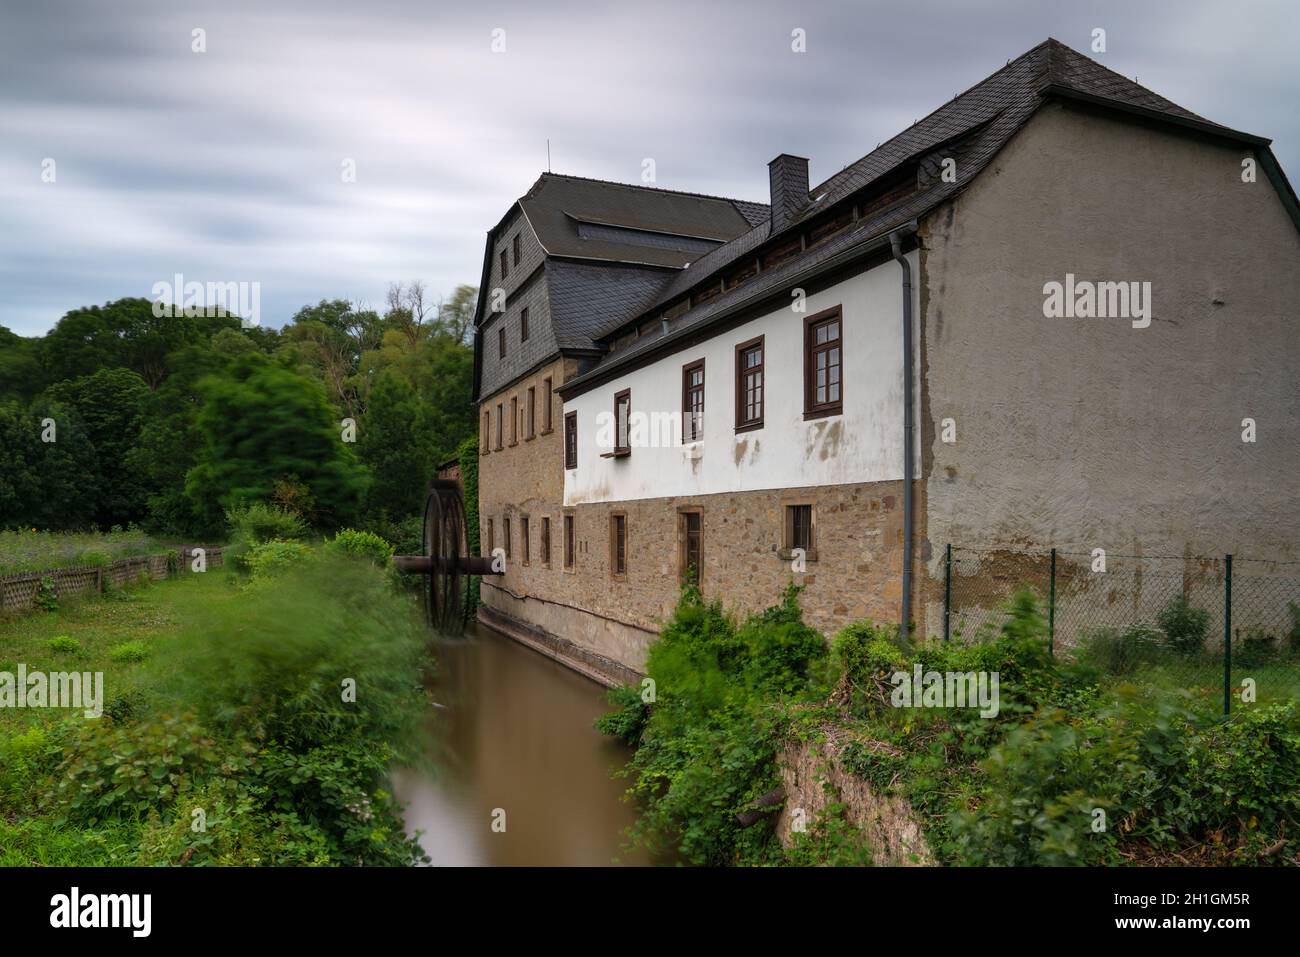 BAD SOBERNHEIM, ALLEMAGNE - 27 JUIN 2020 : image panoramique de l'ancien moulin à eau de Bad Sobernheim le 27 juin 2020 en Allemagne Banque D'Images